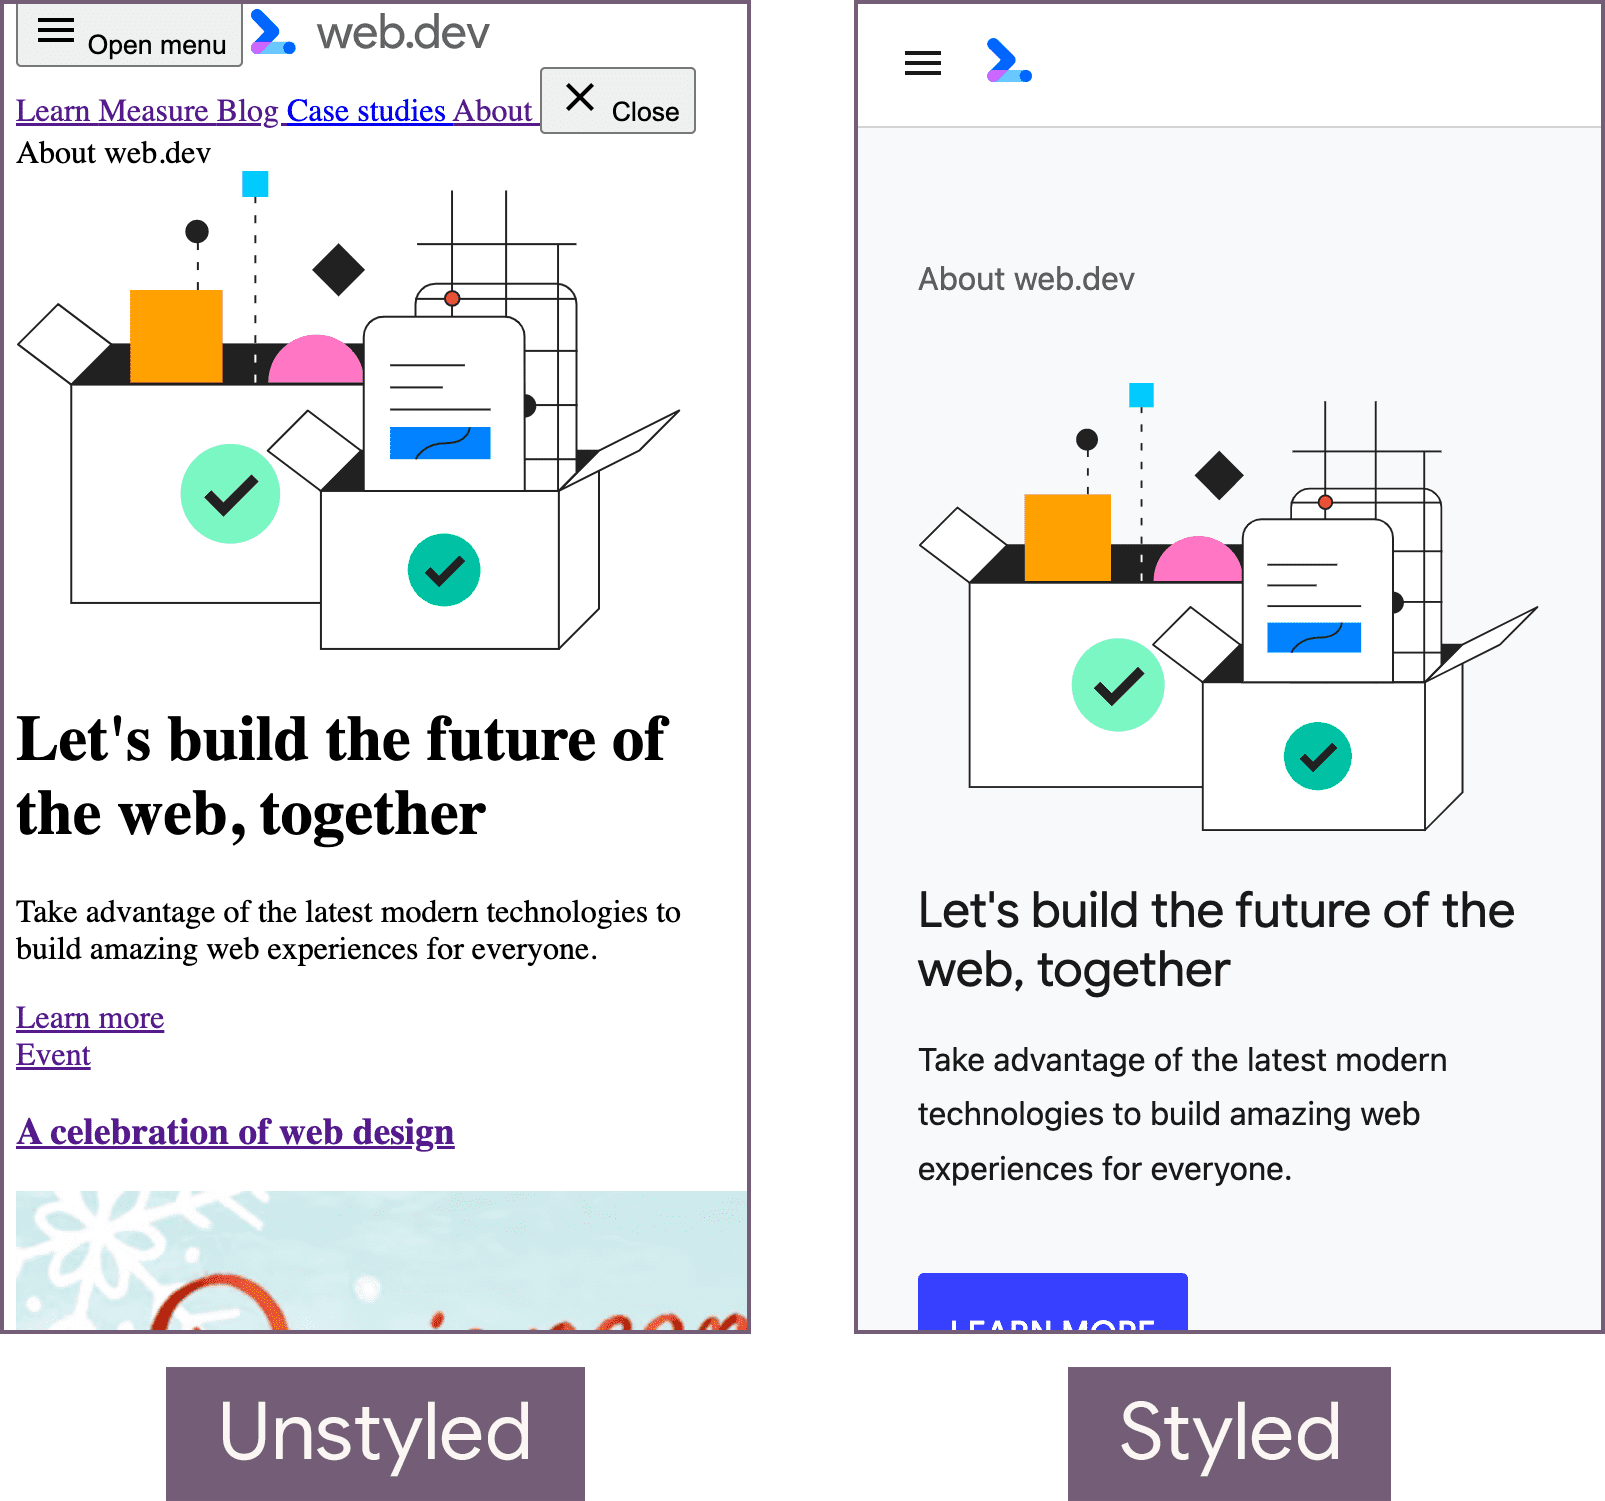 Die web.dev-Startseite im unformatierten Zustand (links) und im Status mit benutzerdefiniertem Stil (rechts).